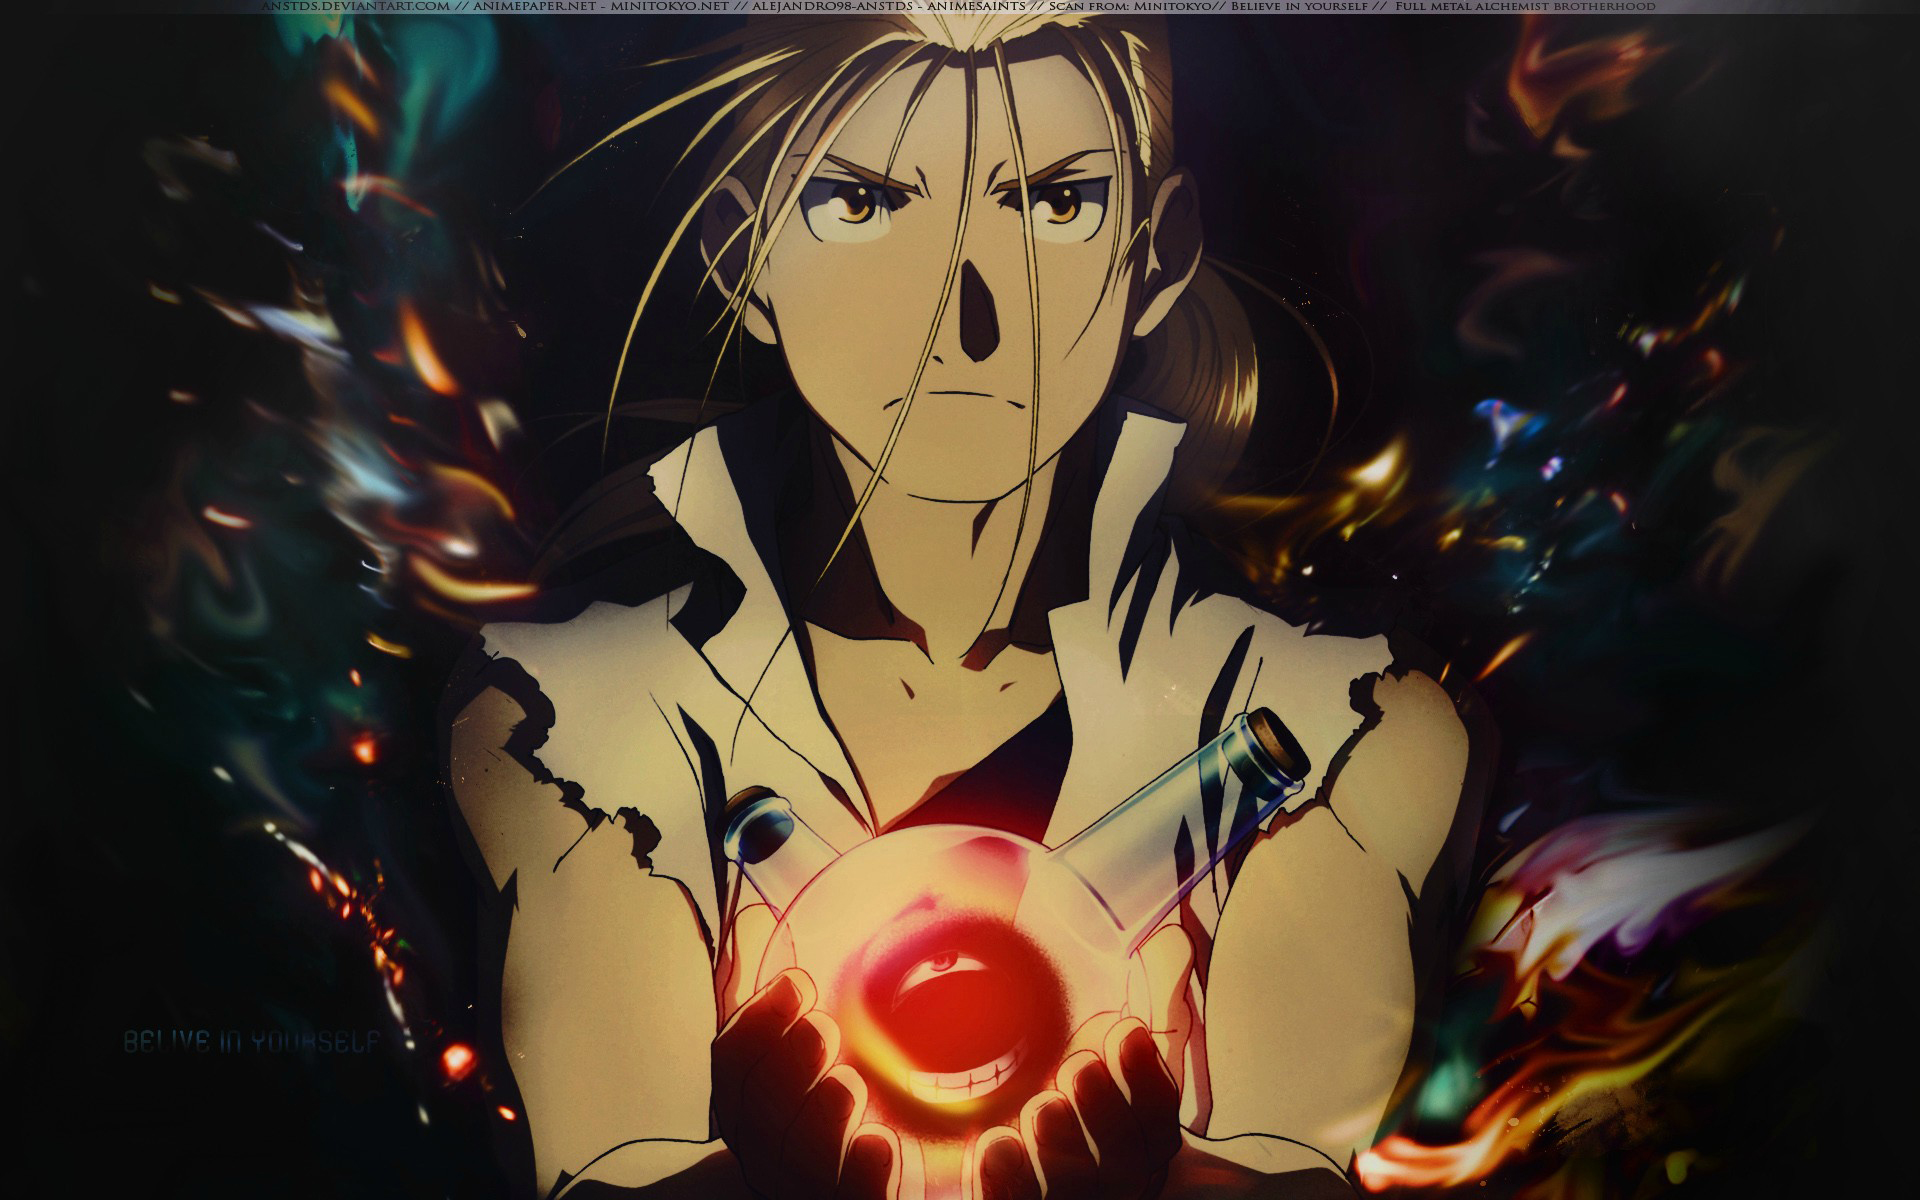 Anime-Wallpaper-Desktop-Background-70 152 Anime Wallpapers For Your Desktop Background